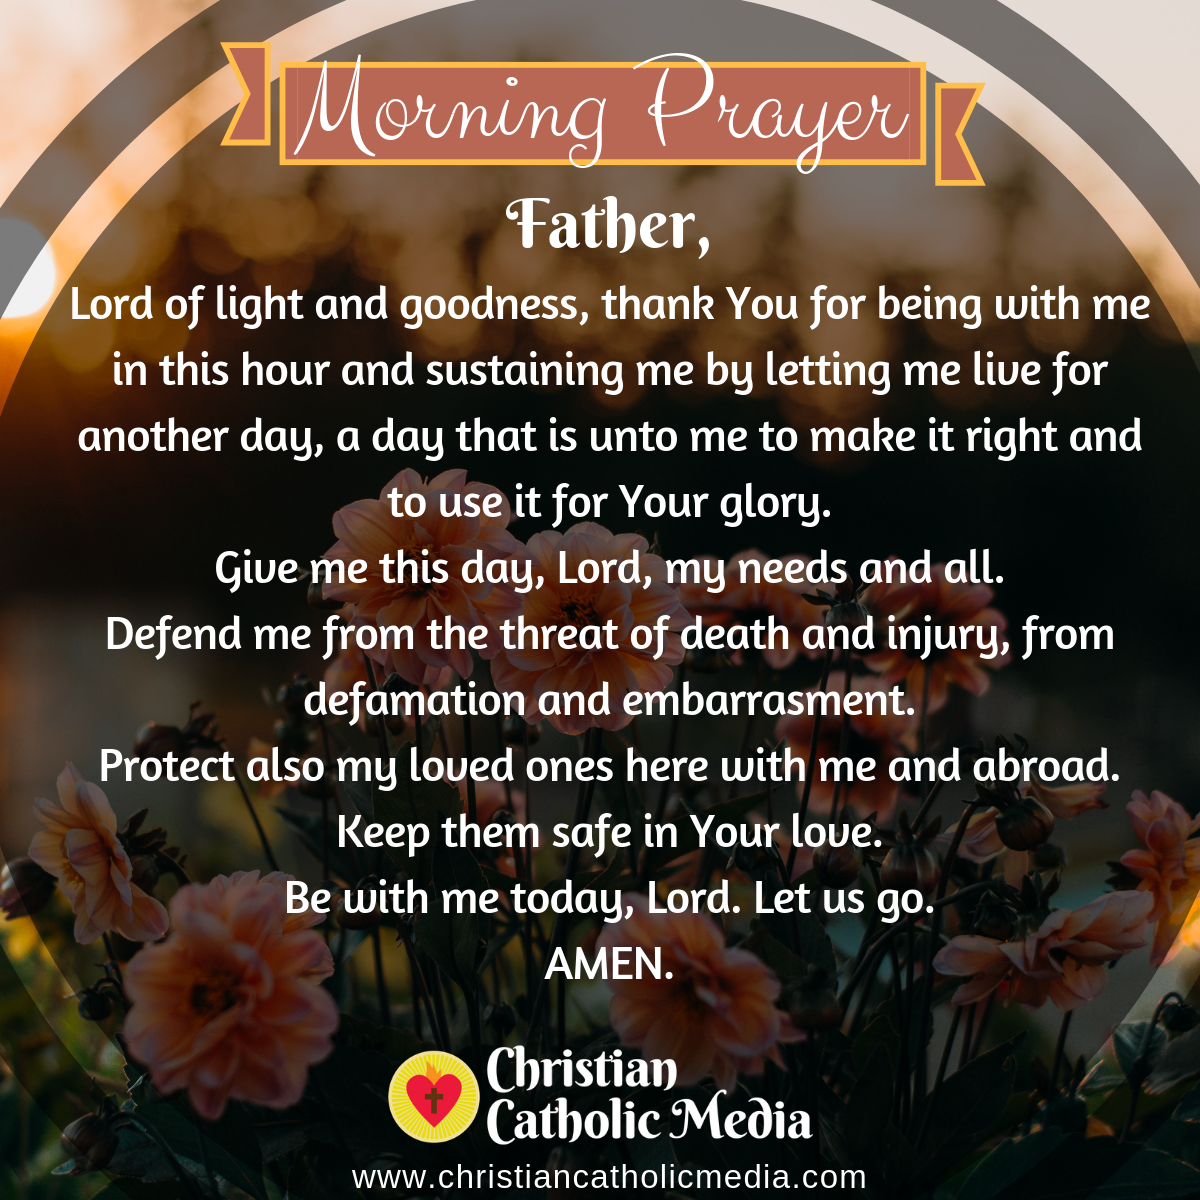 Morning Prayer Catholic Monday 1292019 Christian Catholic Media